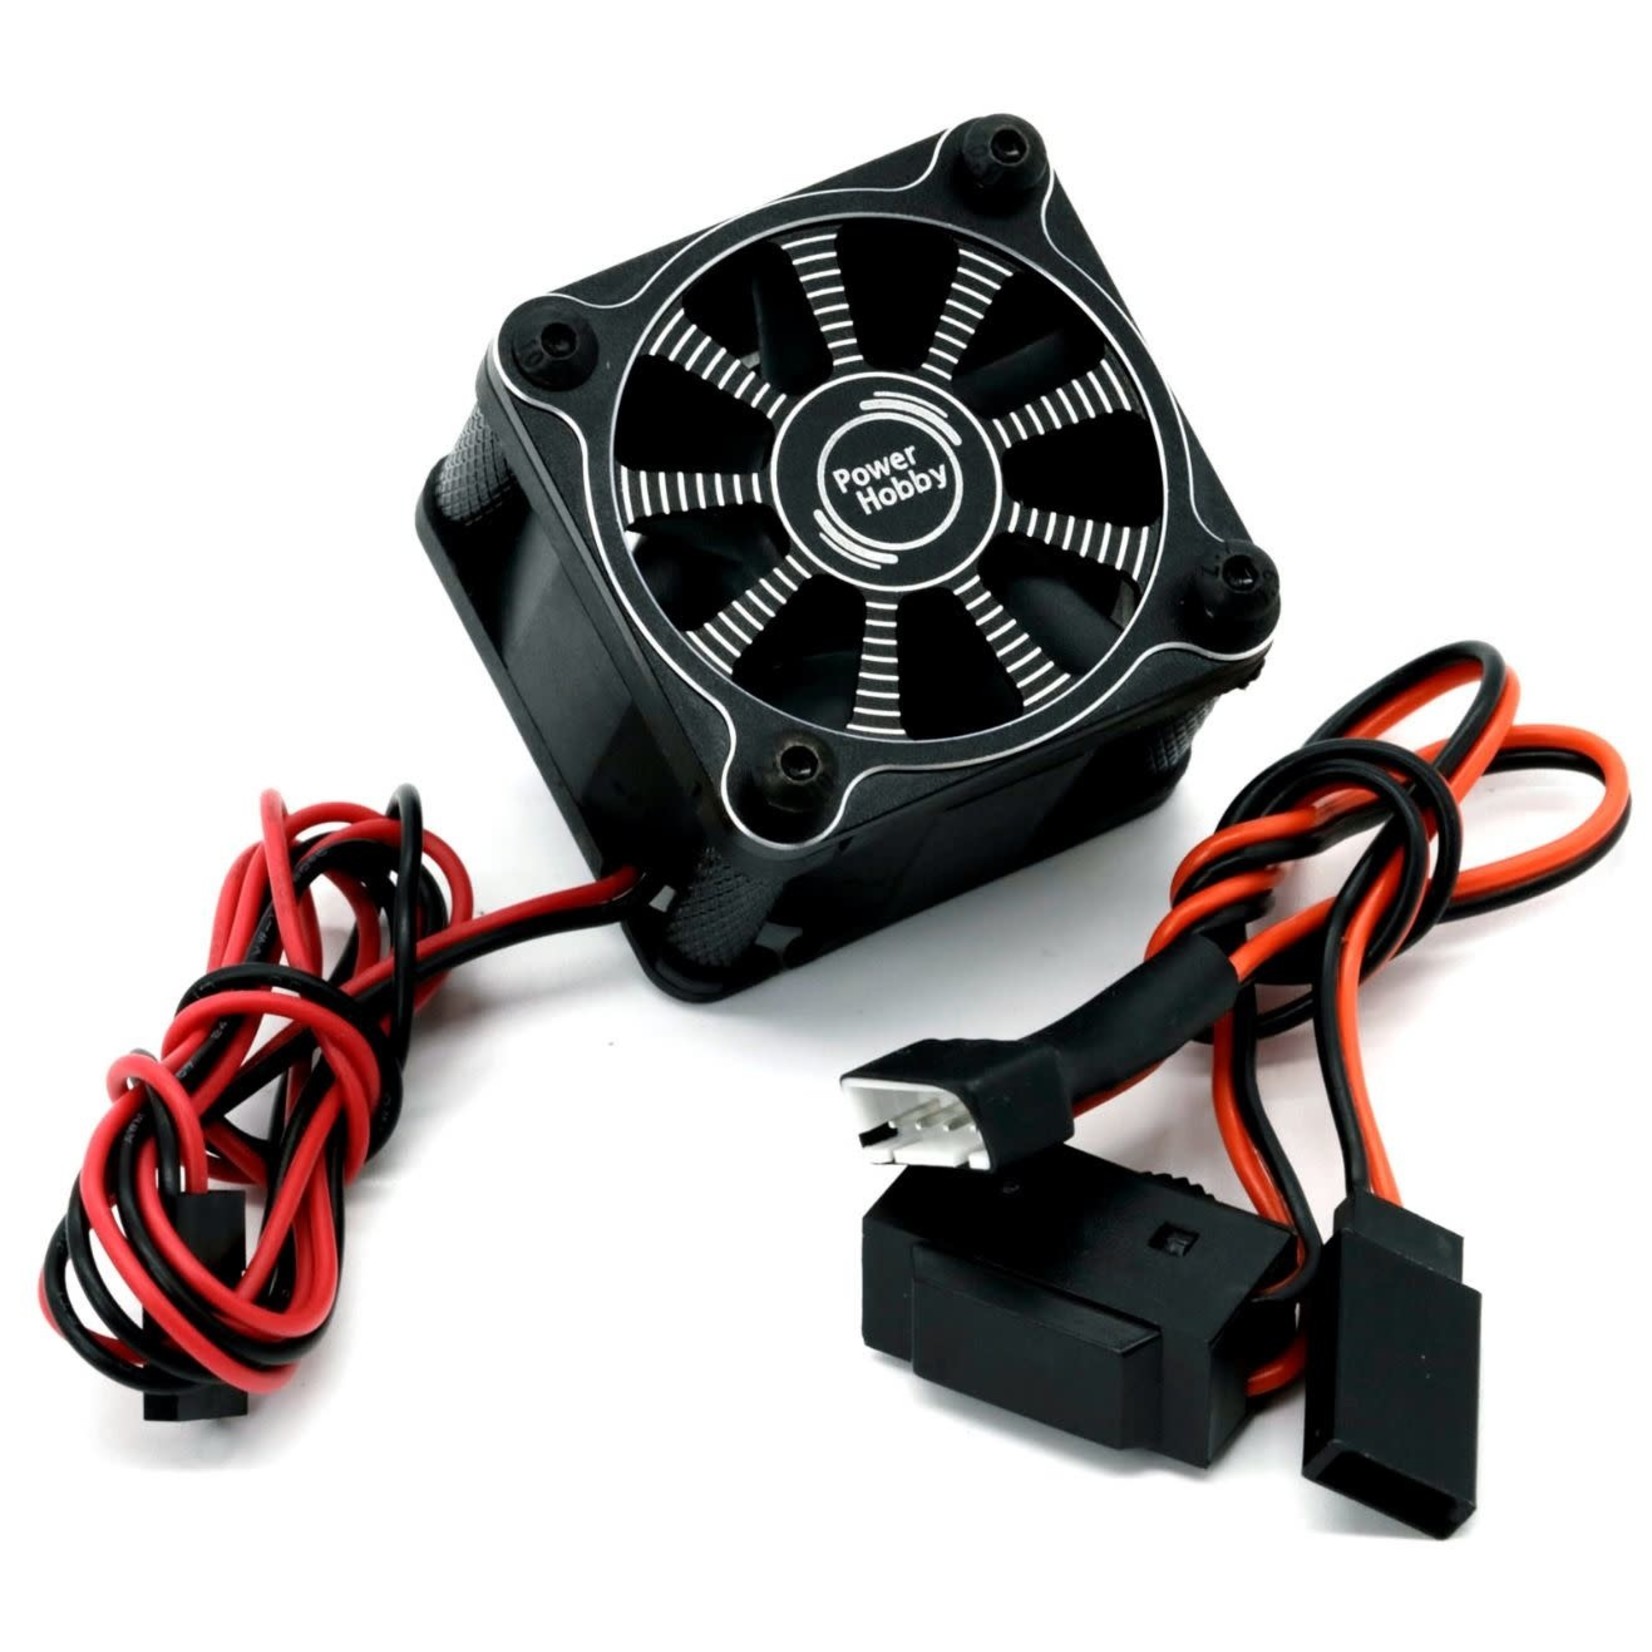 Power Hobby Power Hobby Twister Castle Monster X 8S ESC High Speed Aluminum Cooling Fan (Black) #PHBPHF119BLACK